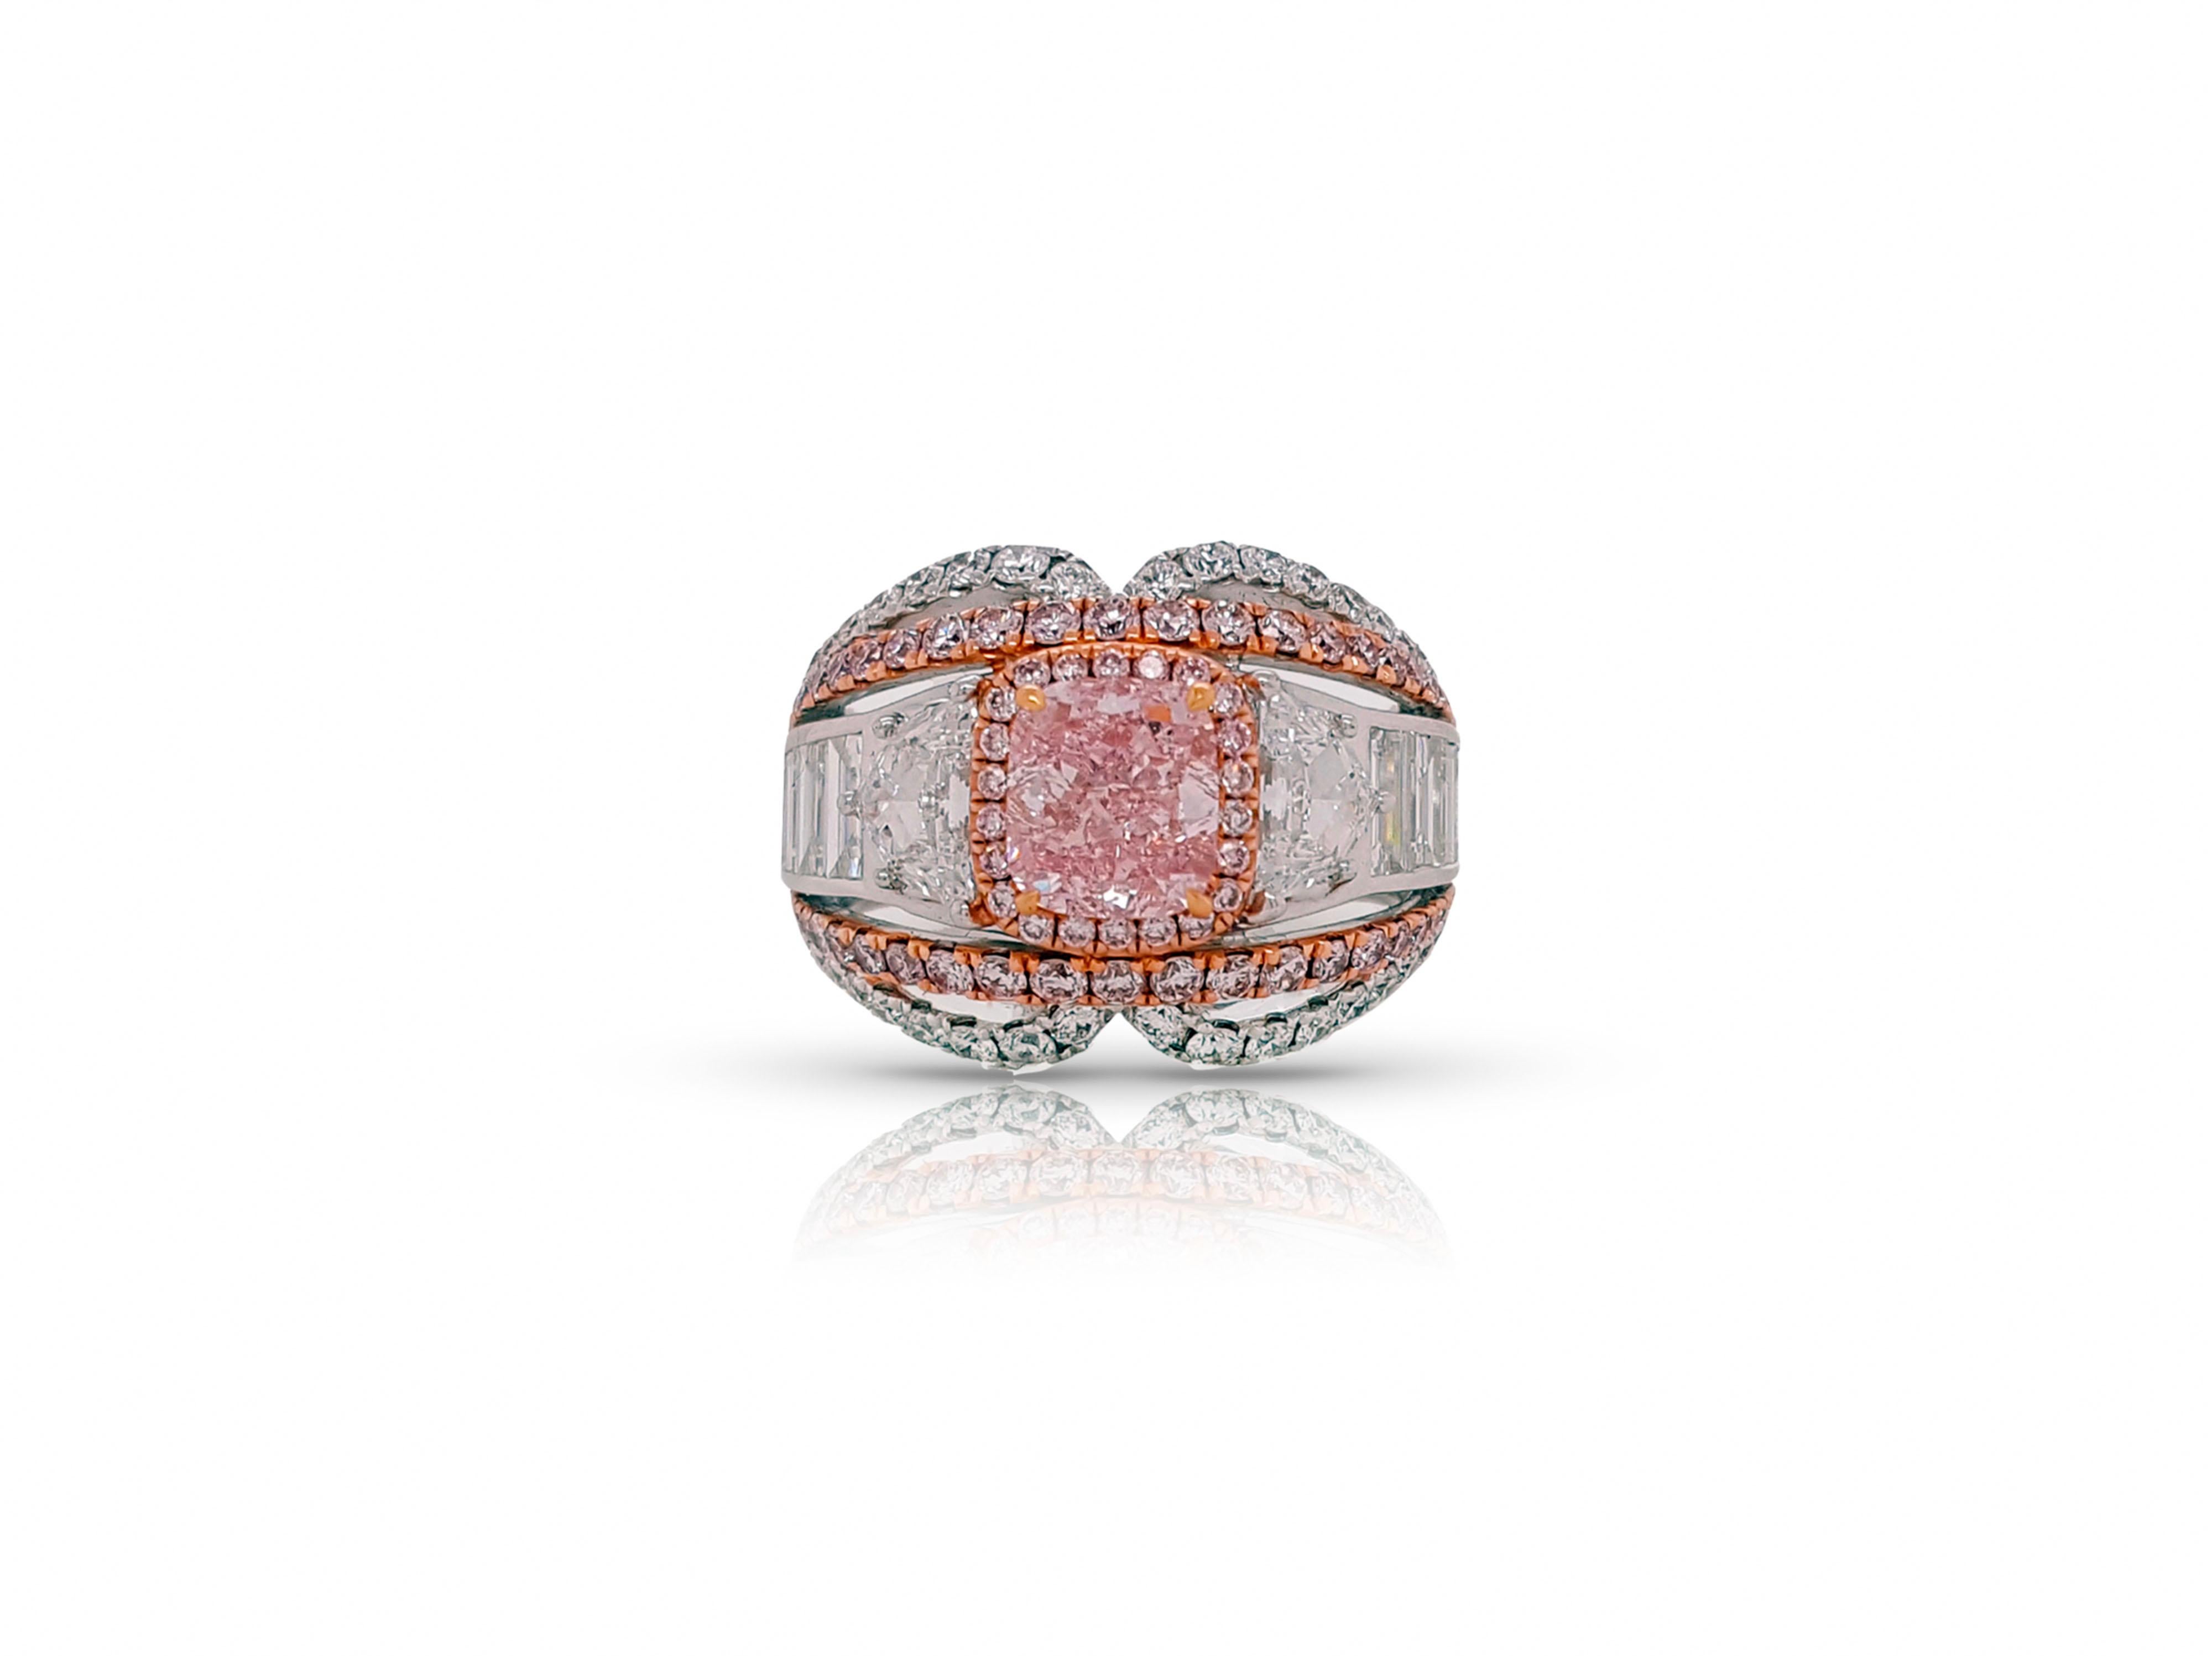 Une remarquable bague de fiançailles et de cocktail en diamant de 4,74 carats au total, avec un design unique qui fera pâlir d'envie les admirateurs de près ou de loin. Diamant certifié GIA de 1,32 carat de couleur rose pourpre intense, taille en